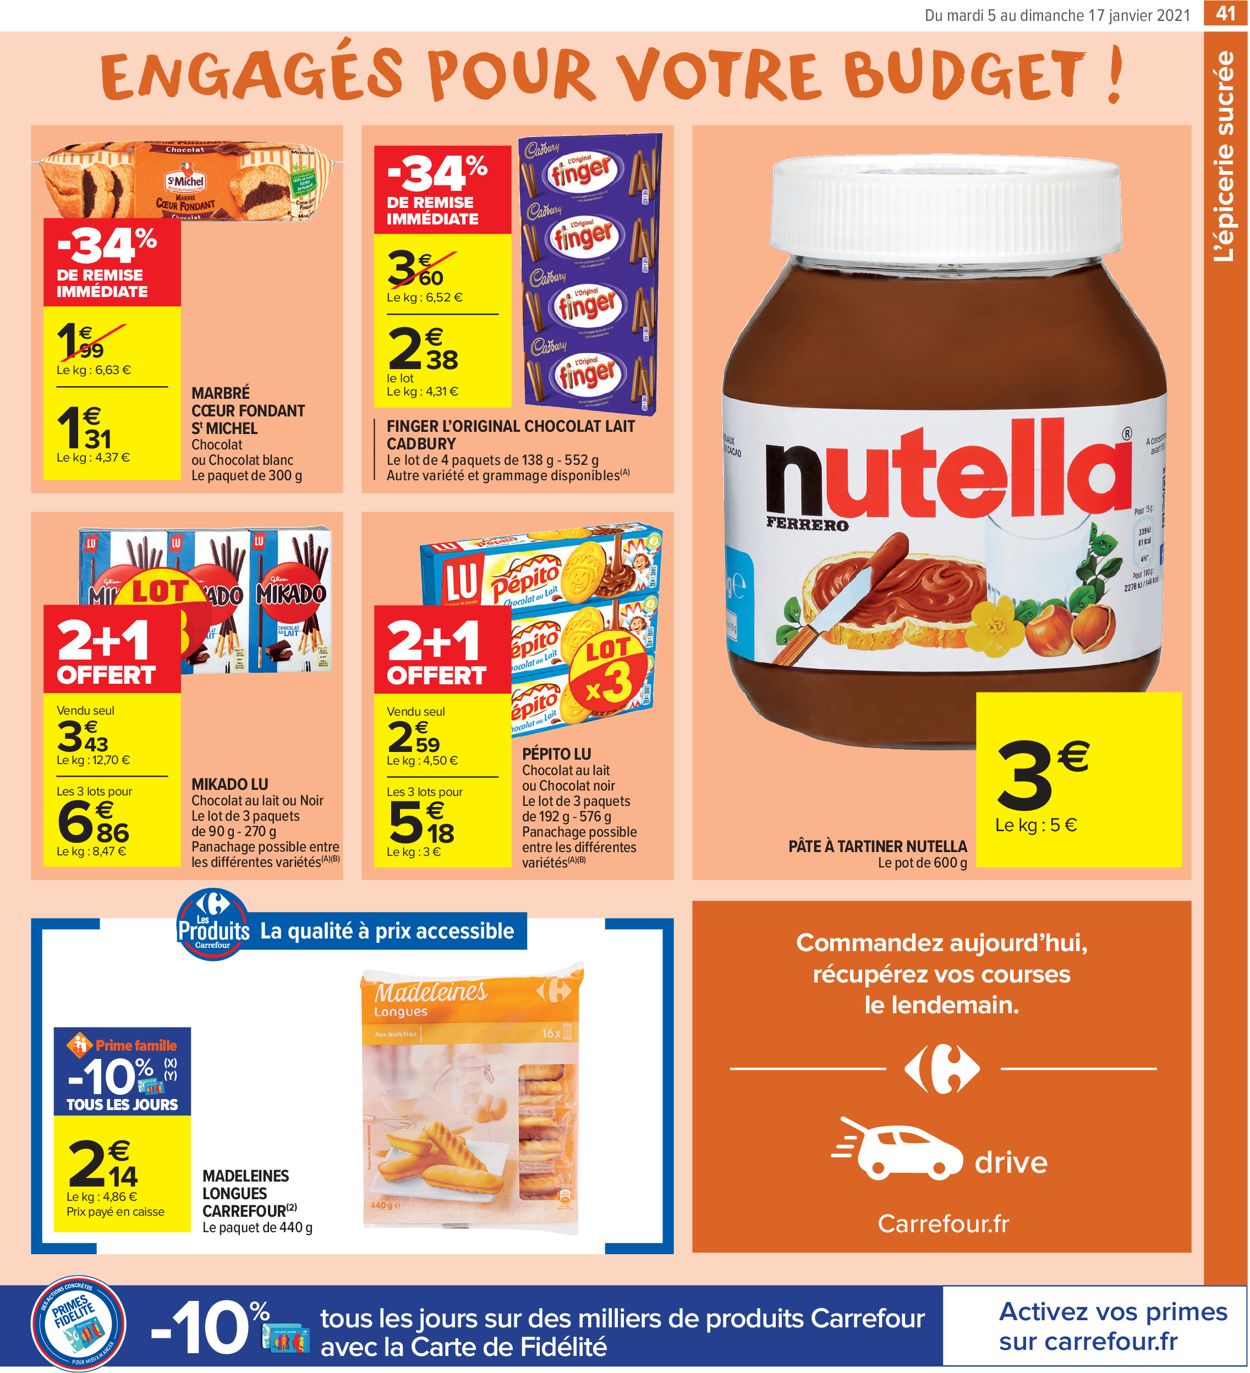 Carrefour Résolument engagés pour votre budget 2021 Catalogue - 05.01-17.01.2021 (Page 41)